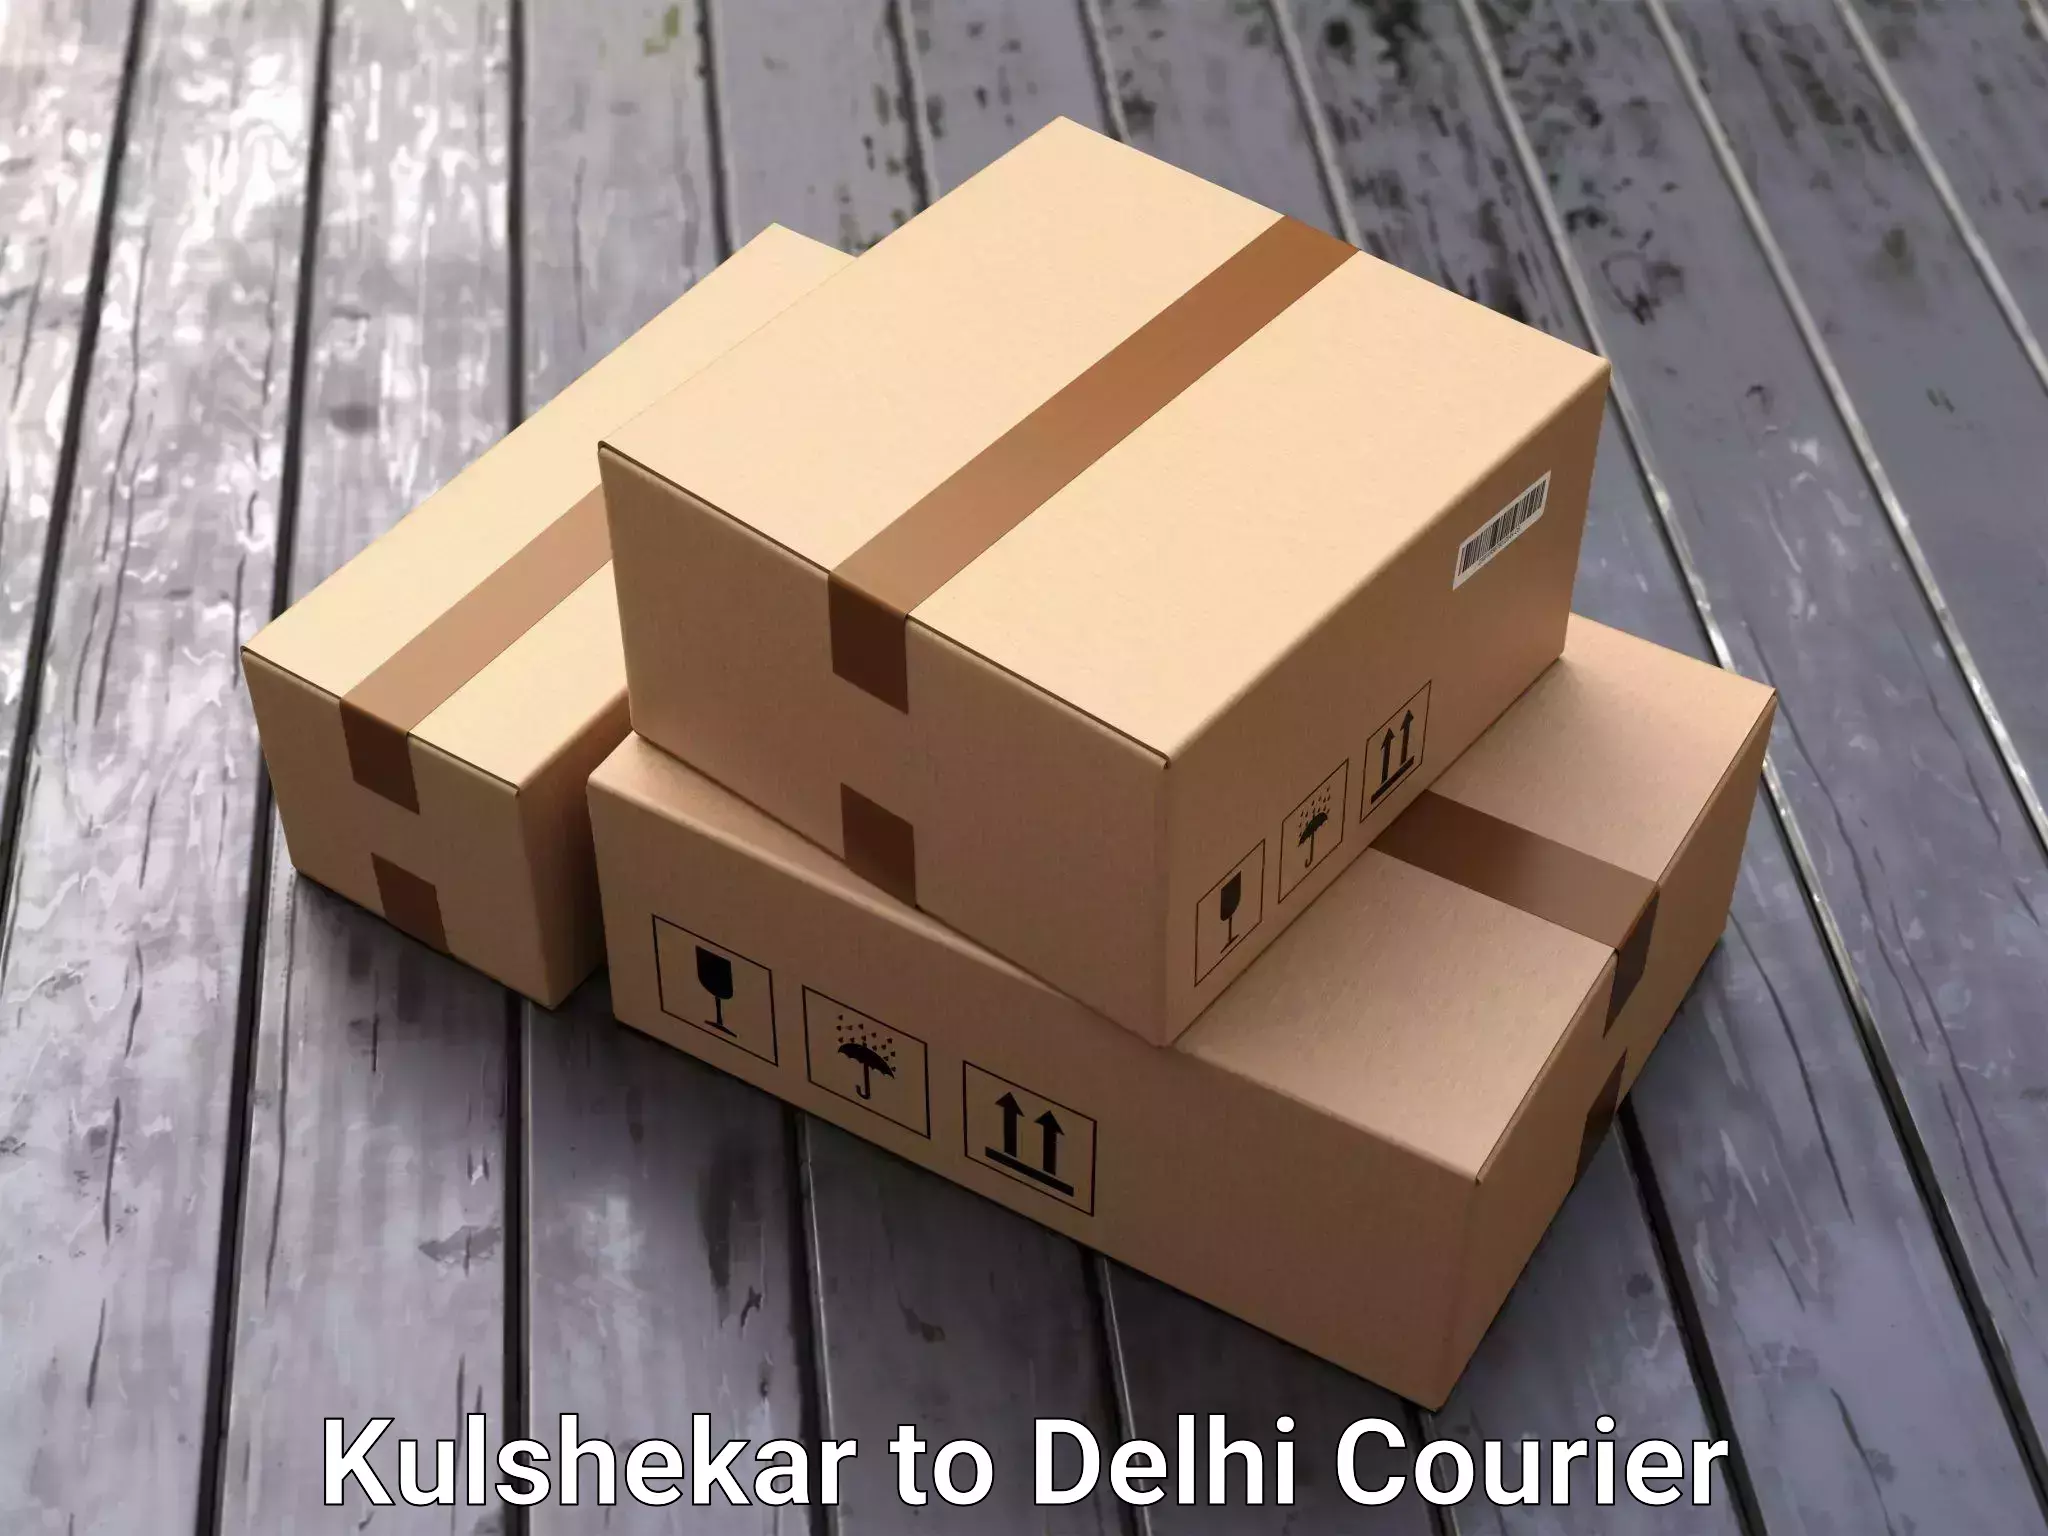 Trusted household movers Kulshekar to Jamia Millia Islamia New Delhi